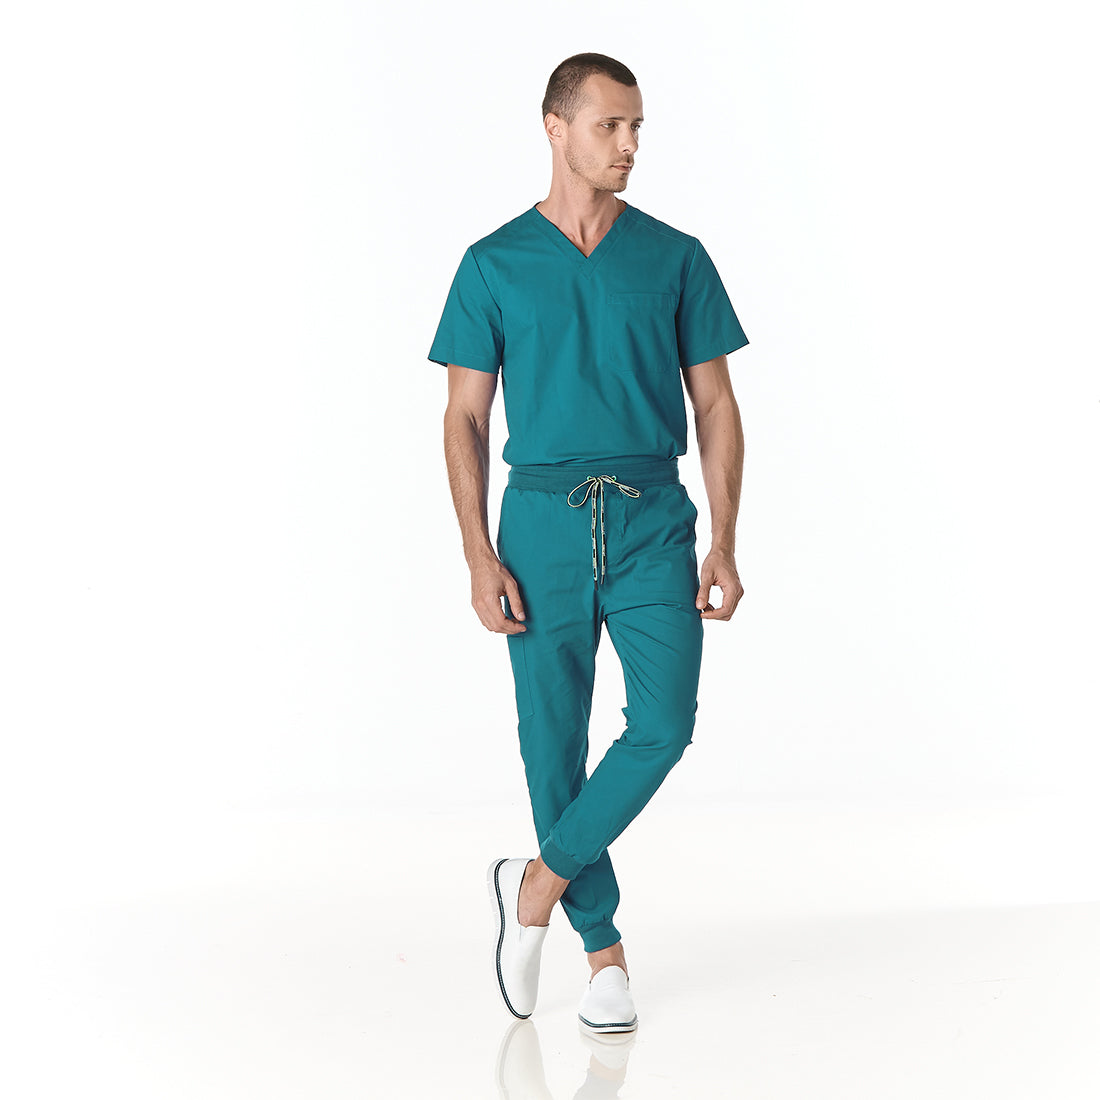 Hombre vistiendo conjunto sanitario color azul turquesa con escote en v y pantalon tipo jogger - frente